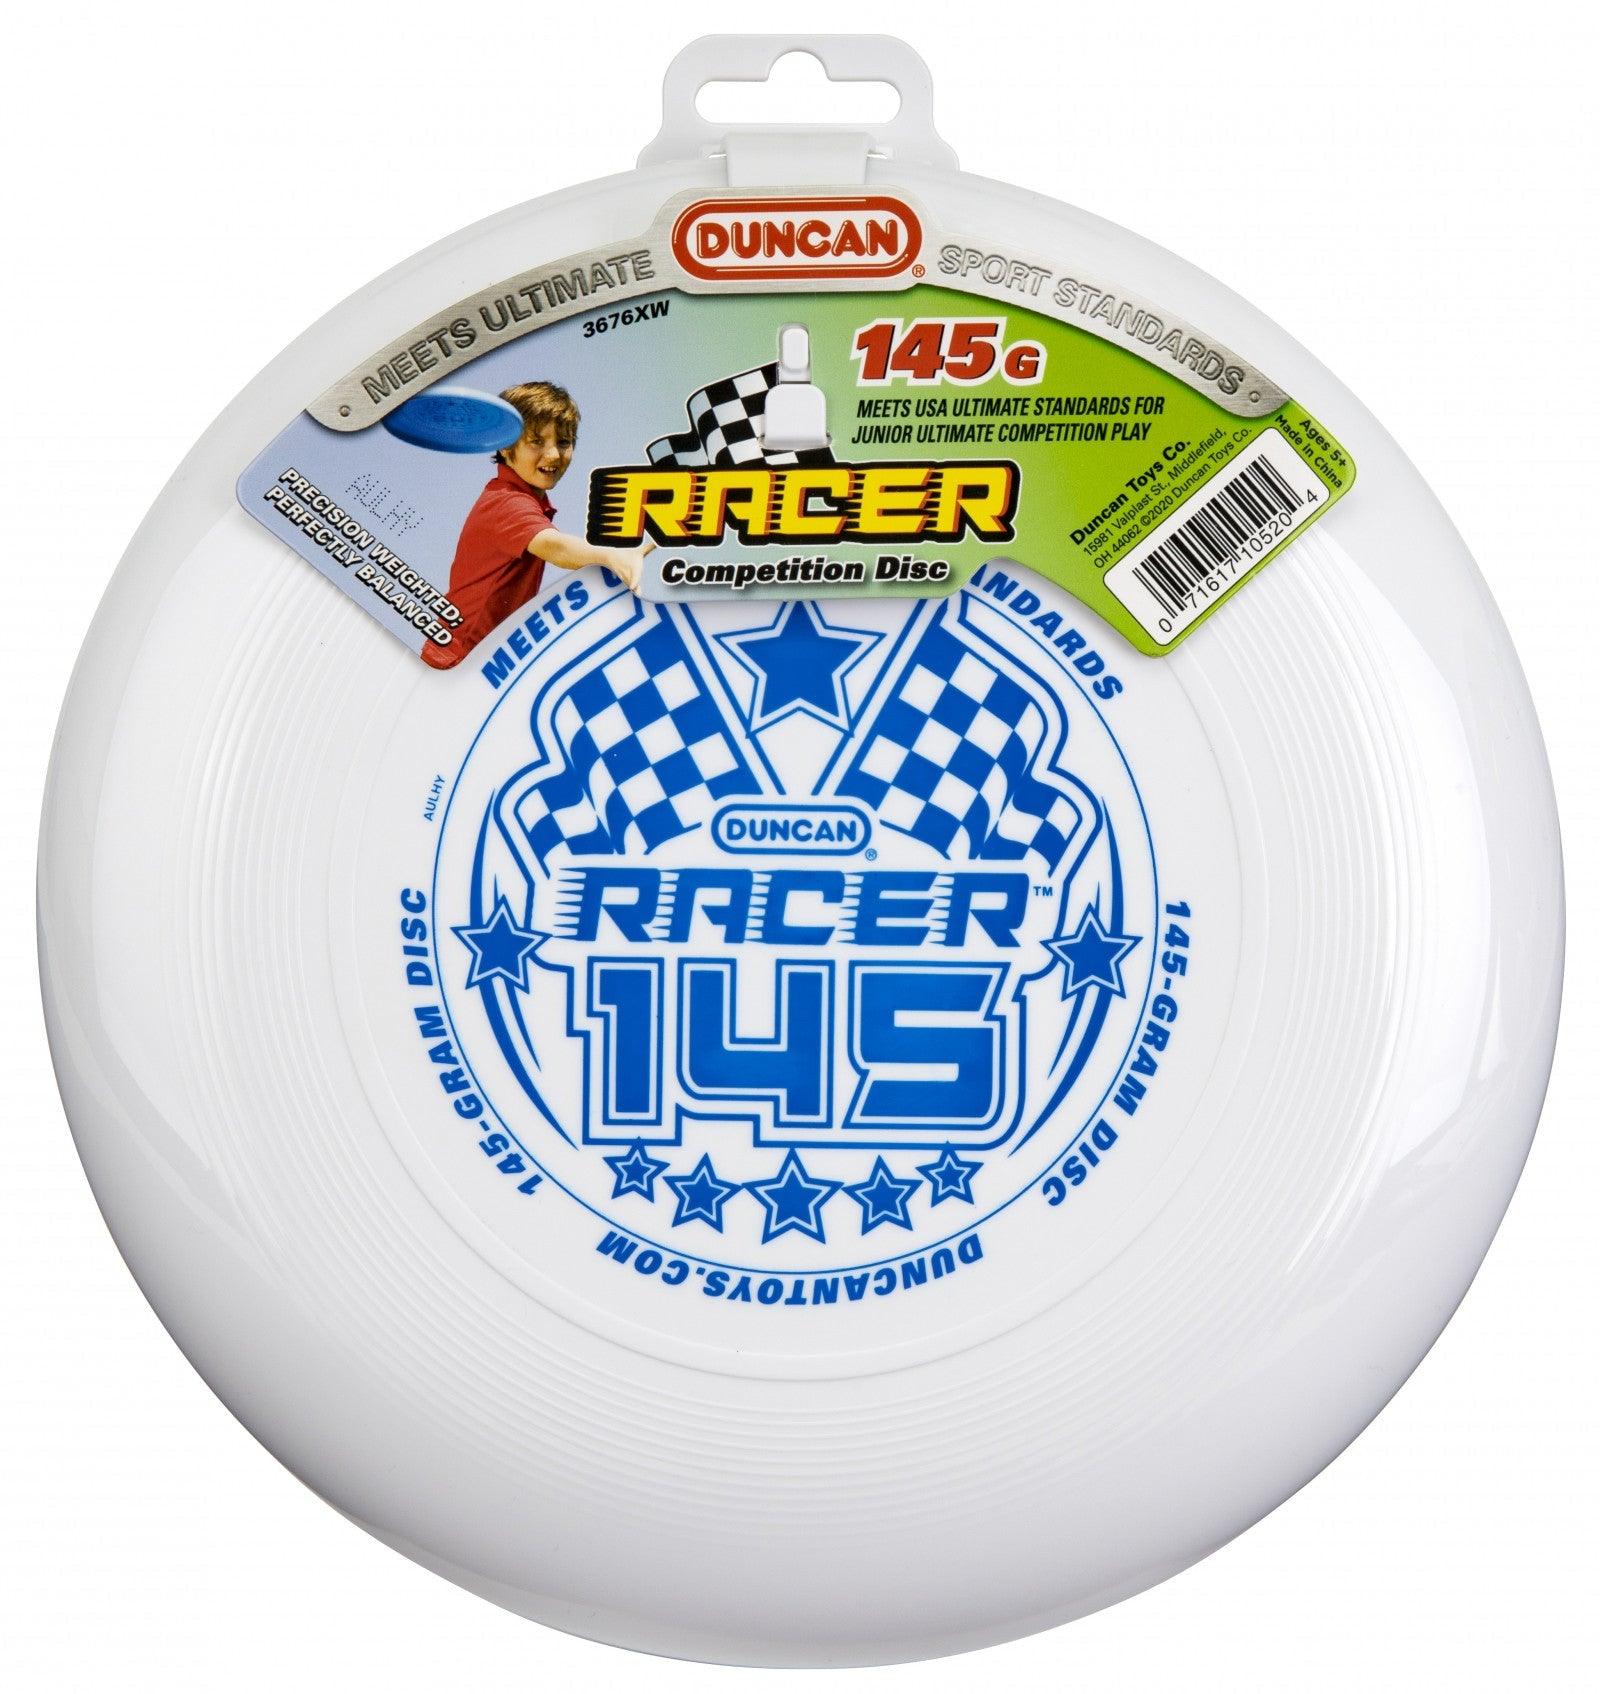 VR-88722 Duncan Racer 145 Frisbee (Assorted Colours) - Duncan - Titan Pop Culture